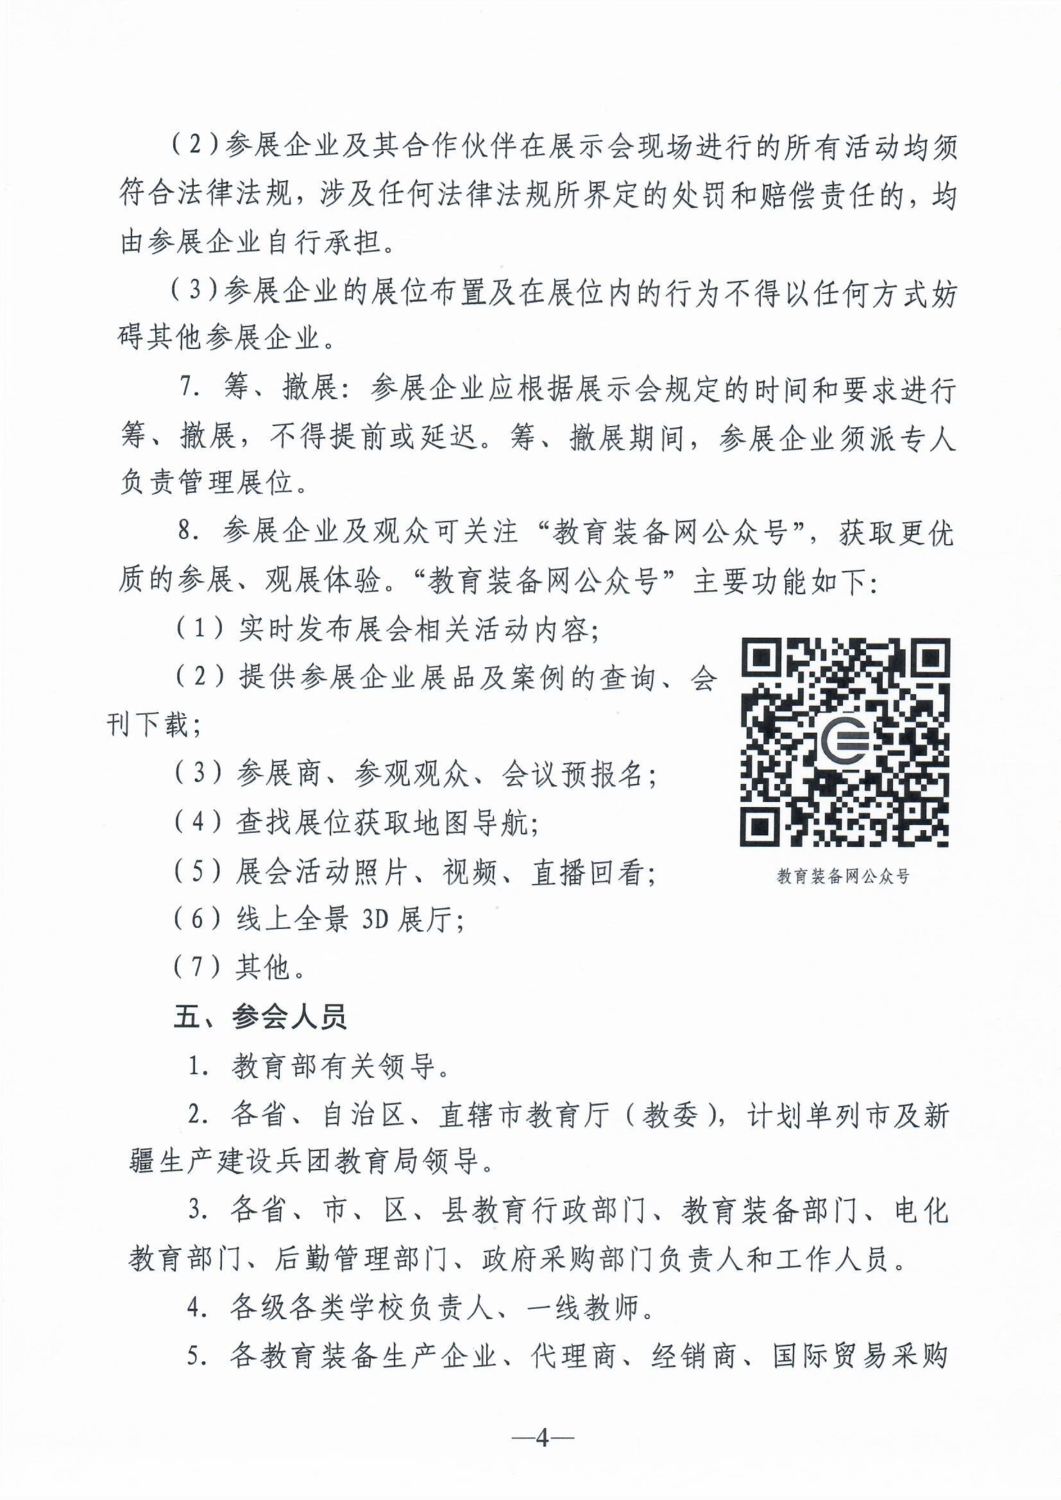 关于举办第80届中国教育装备展示会的通知4.png